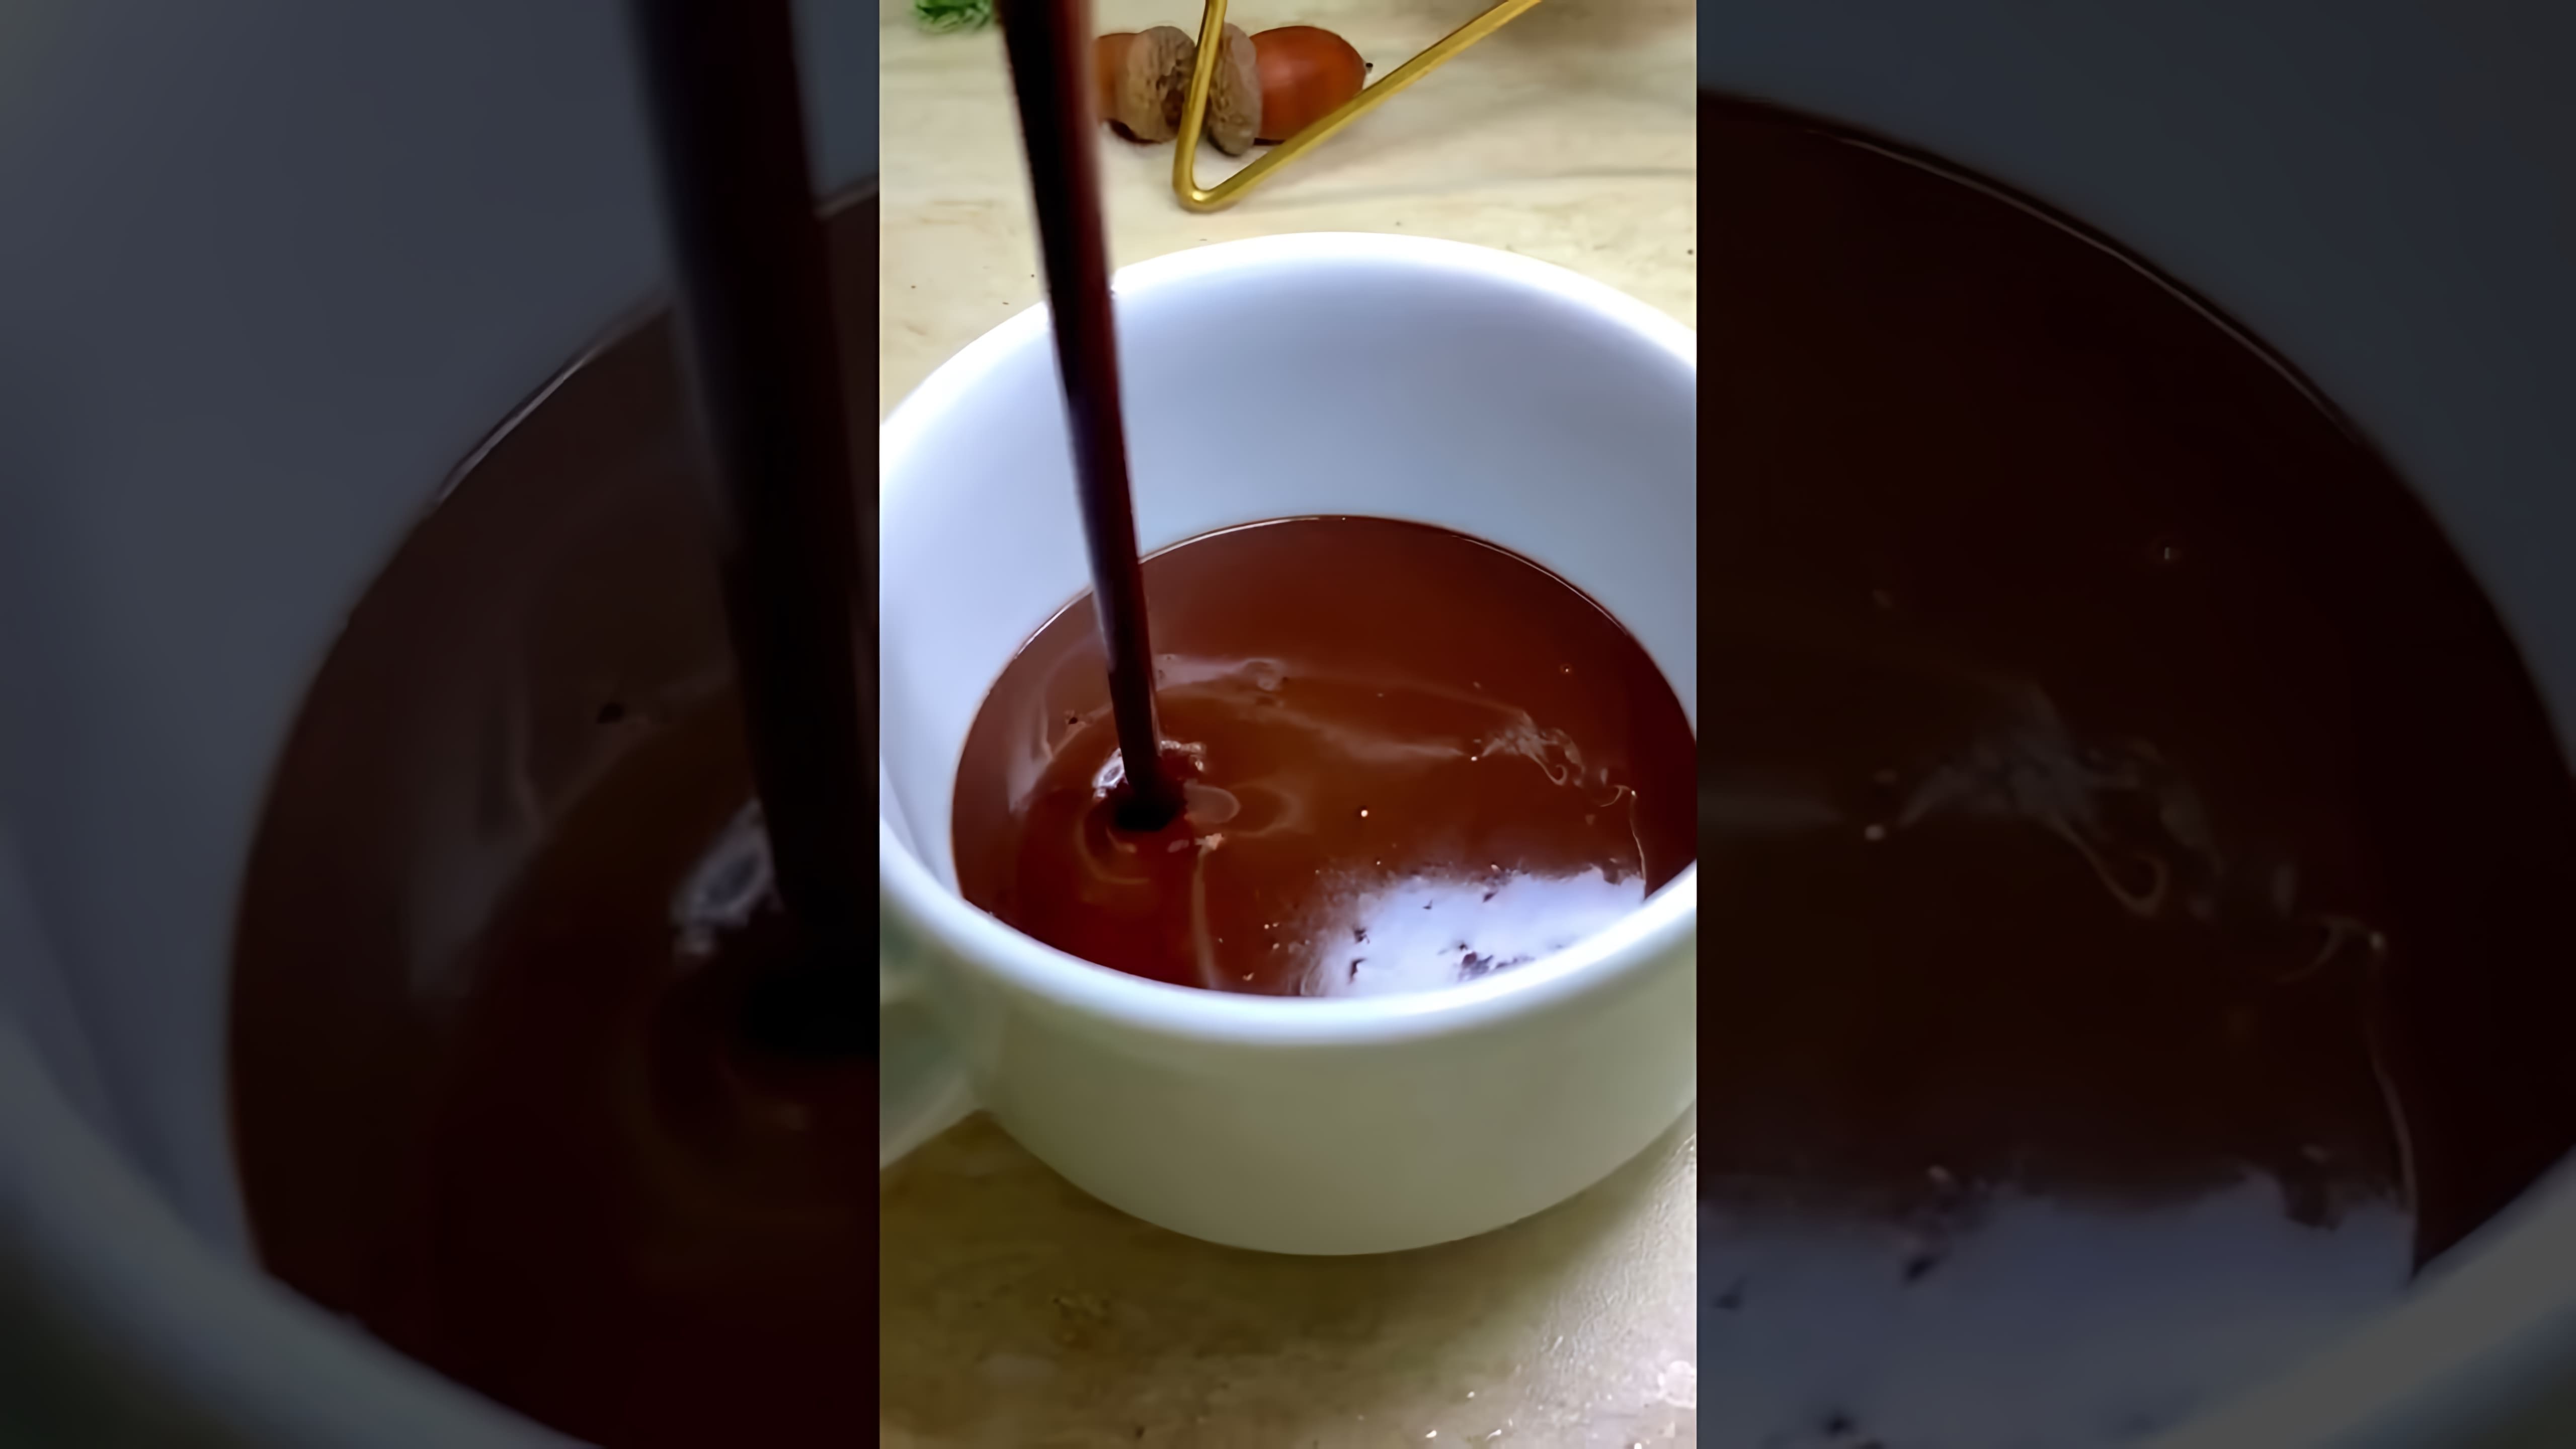 "Настоящий горячий шоколад: просто и вкусно" - это видео-ролик, который показывает, как приготовить настоящий горячий шоколад в домашних условиях